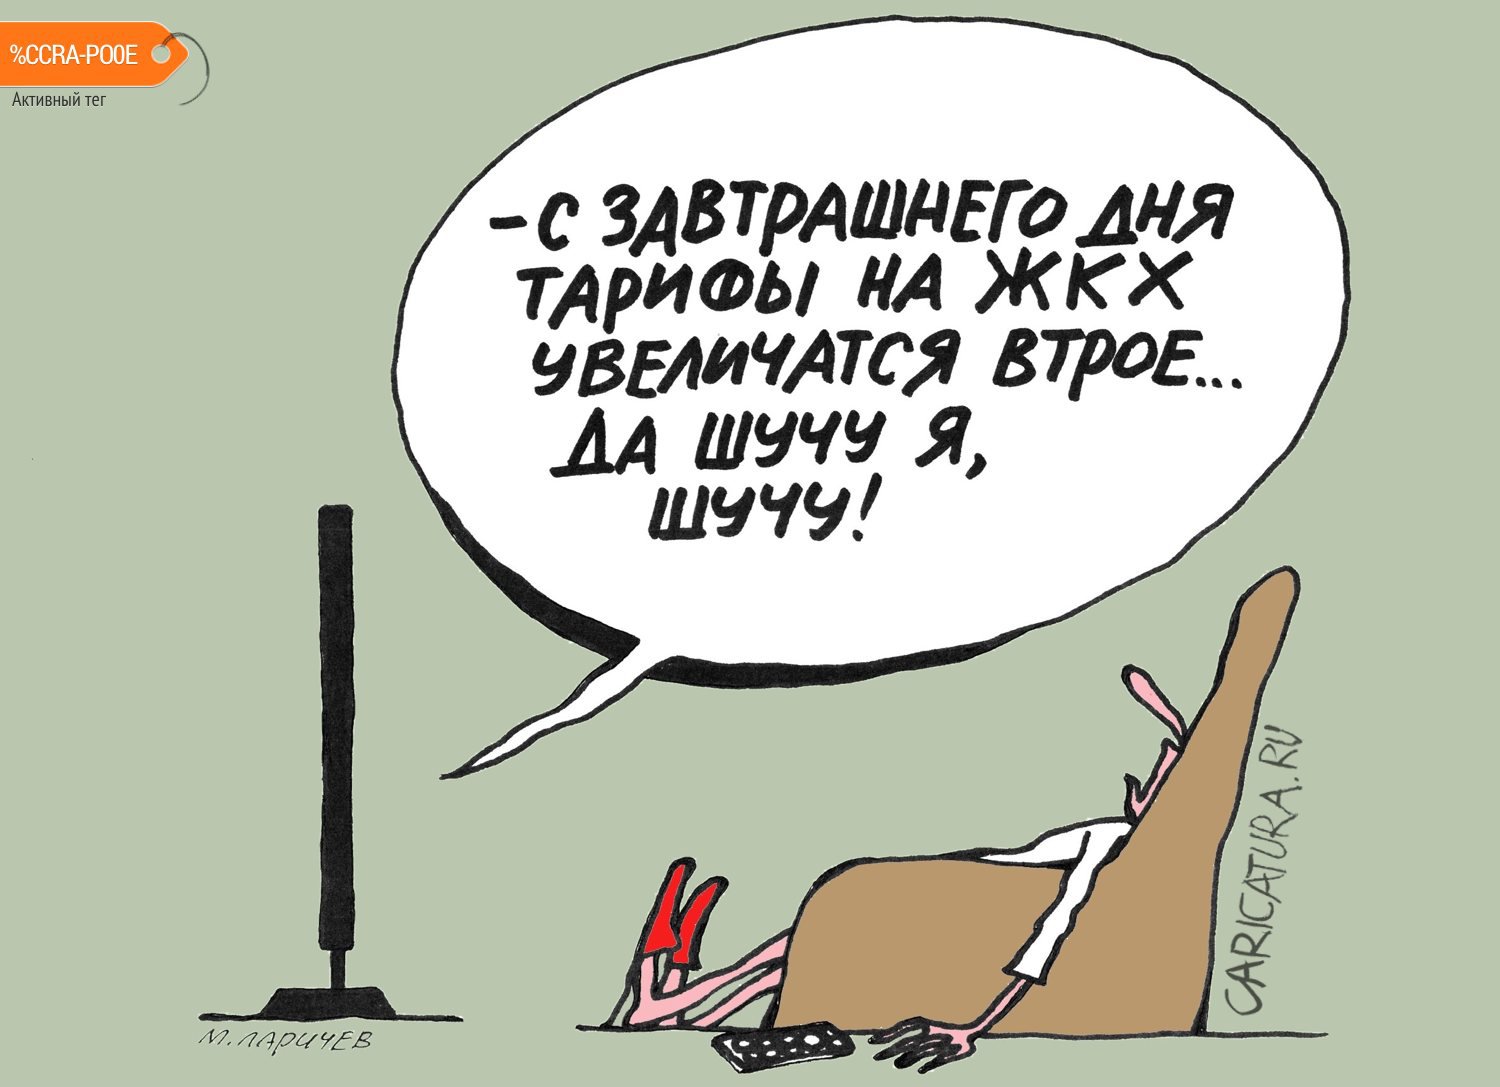 Карикатура "Шуточки", Михаил Ларичев